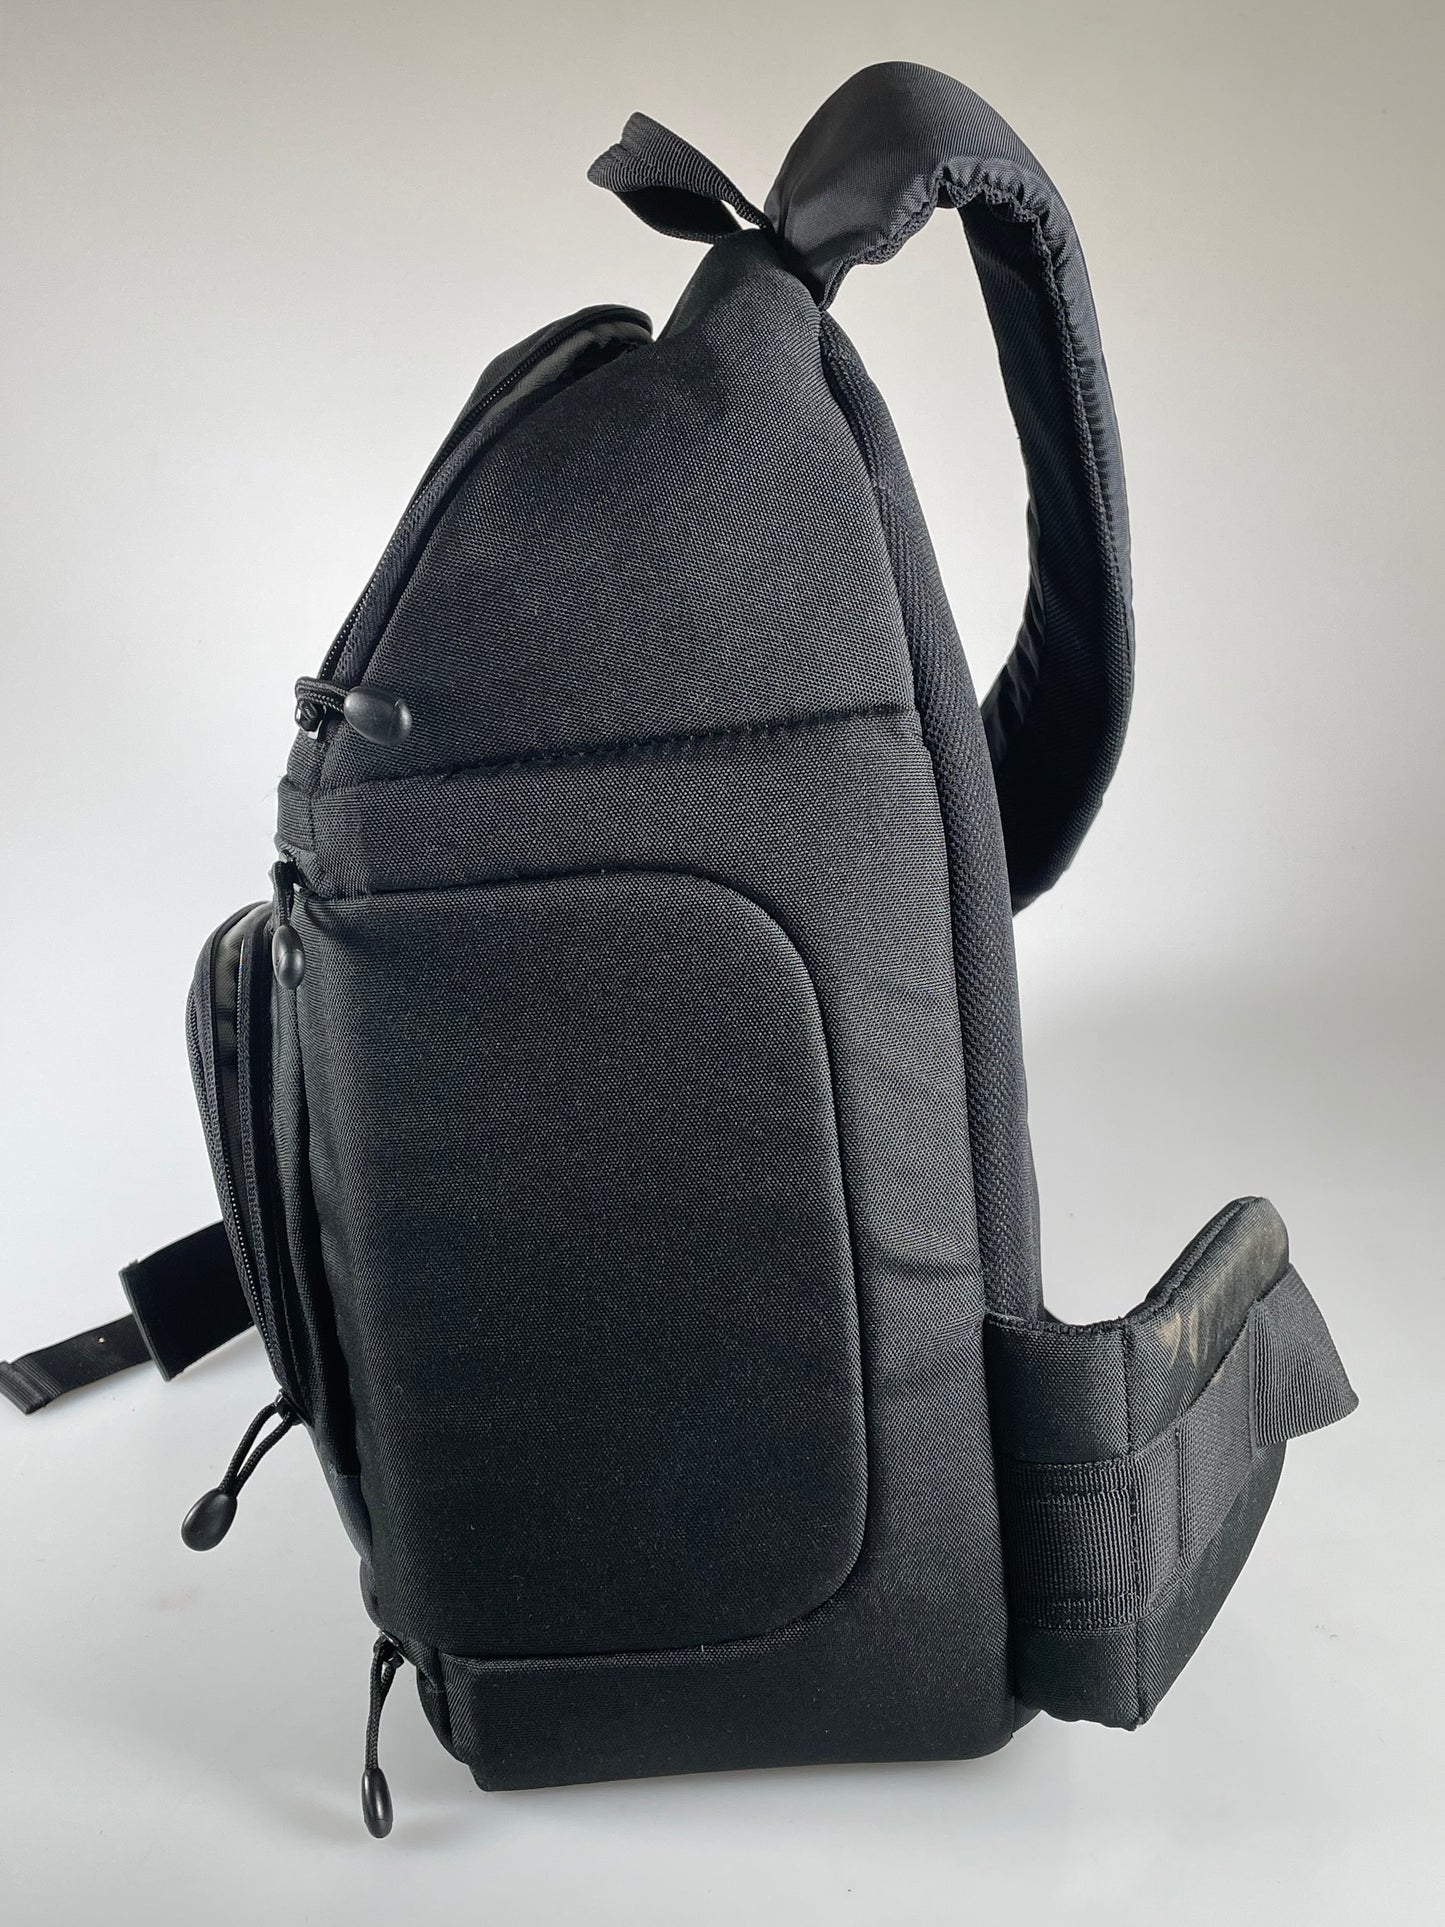 Lowepro Slingshot 300 AW - All Weather DSLR Sling Black Camera Bag